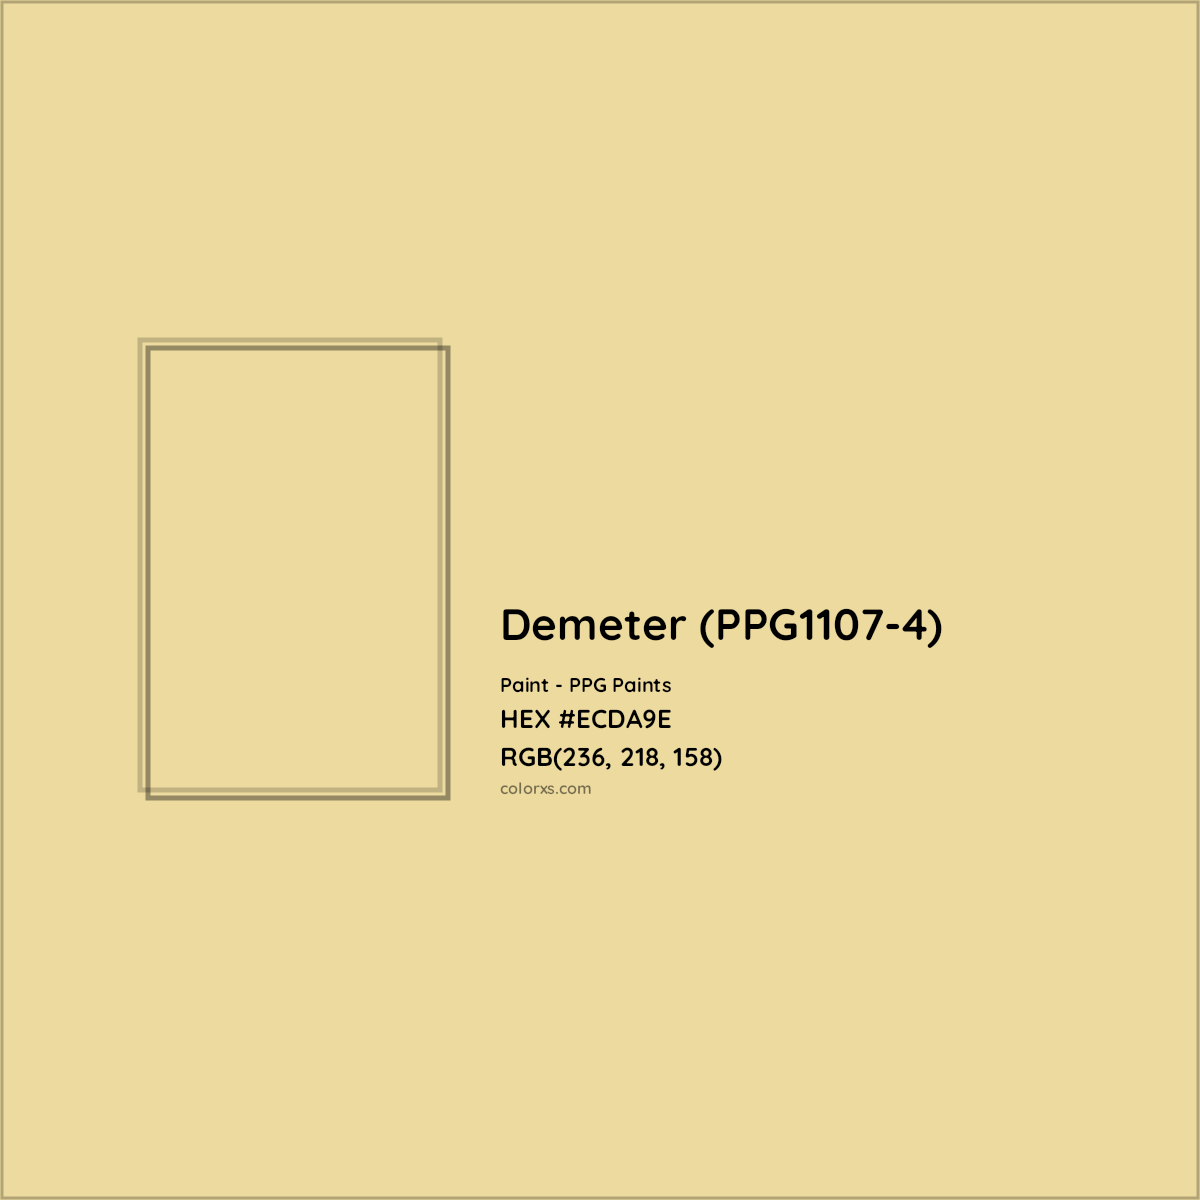 HEX #ECDA9E Demeter (PPG1107-4) Paint PPG Paints - Color Code